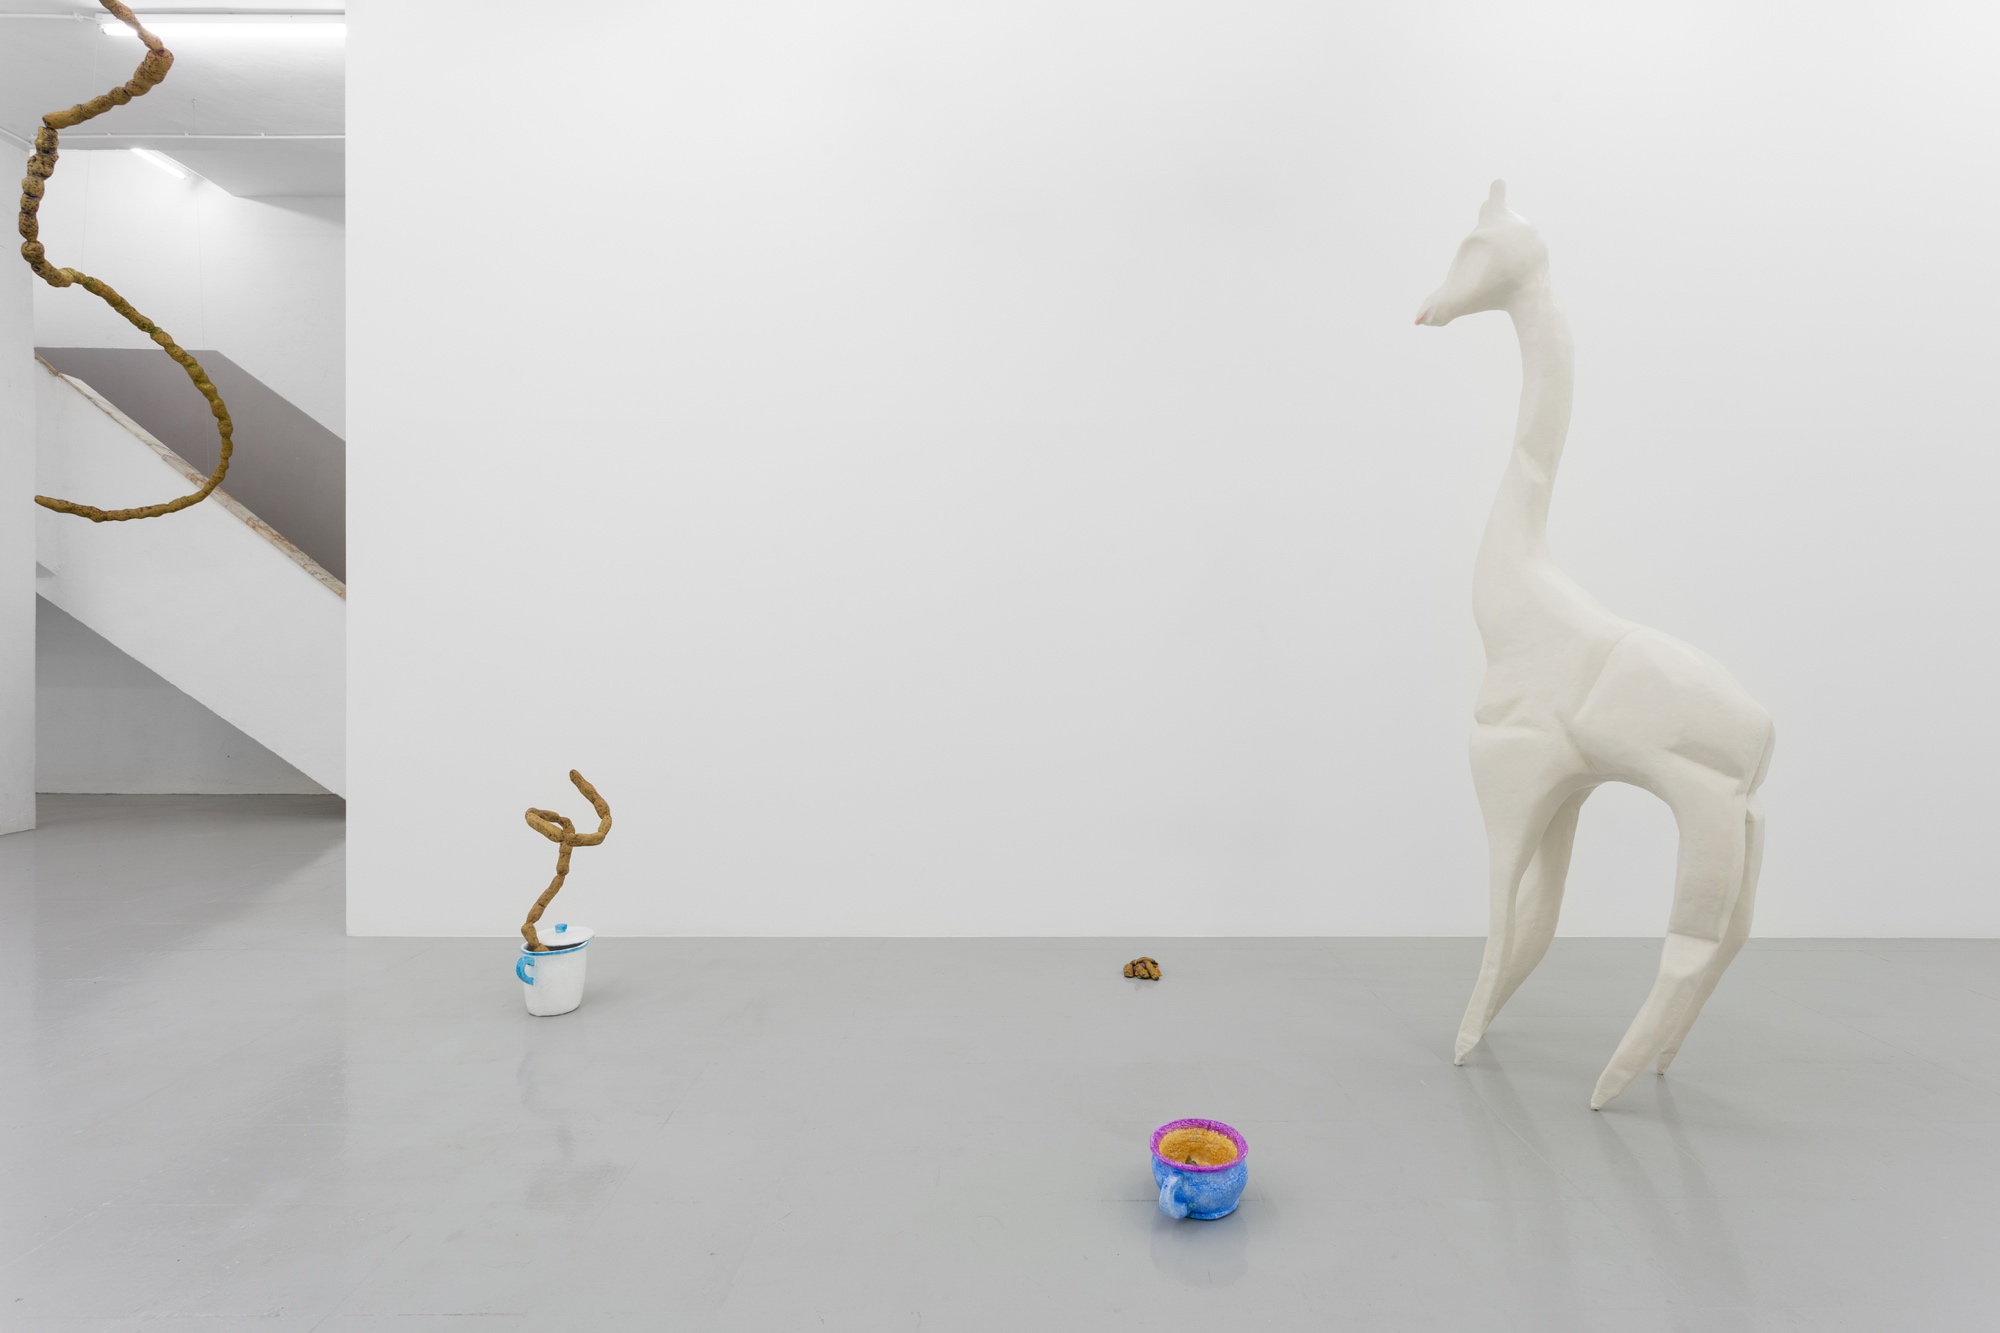  Naufus Ramírez-Figueroa, Shit-Baby and the Crumpled Giraffe, 2017  
Instalação, esferovite, resina epóxica, fibra de vidro, pigmentos minerais. Vista da exposição na Kunsthalle Lissabon. Foto: Bruno Lopes. 
